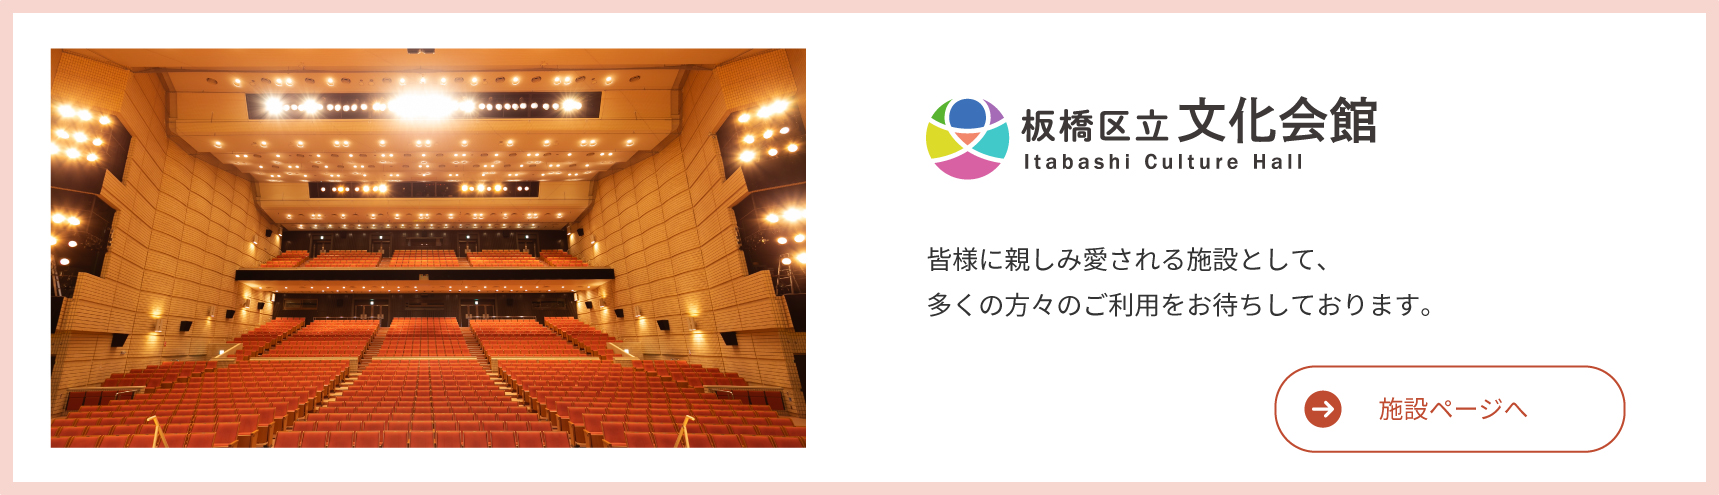 Itabashi Bunka Kaikan Așteptăm cu nerăbdare utilizarea multor oameni ca o facilitate familiară și iubită de toată lumea.